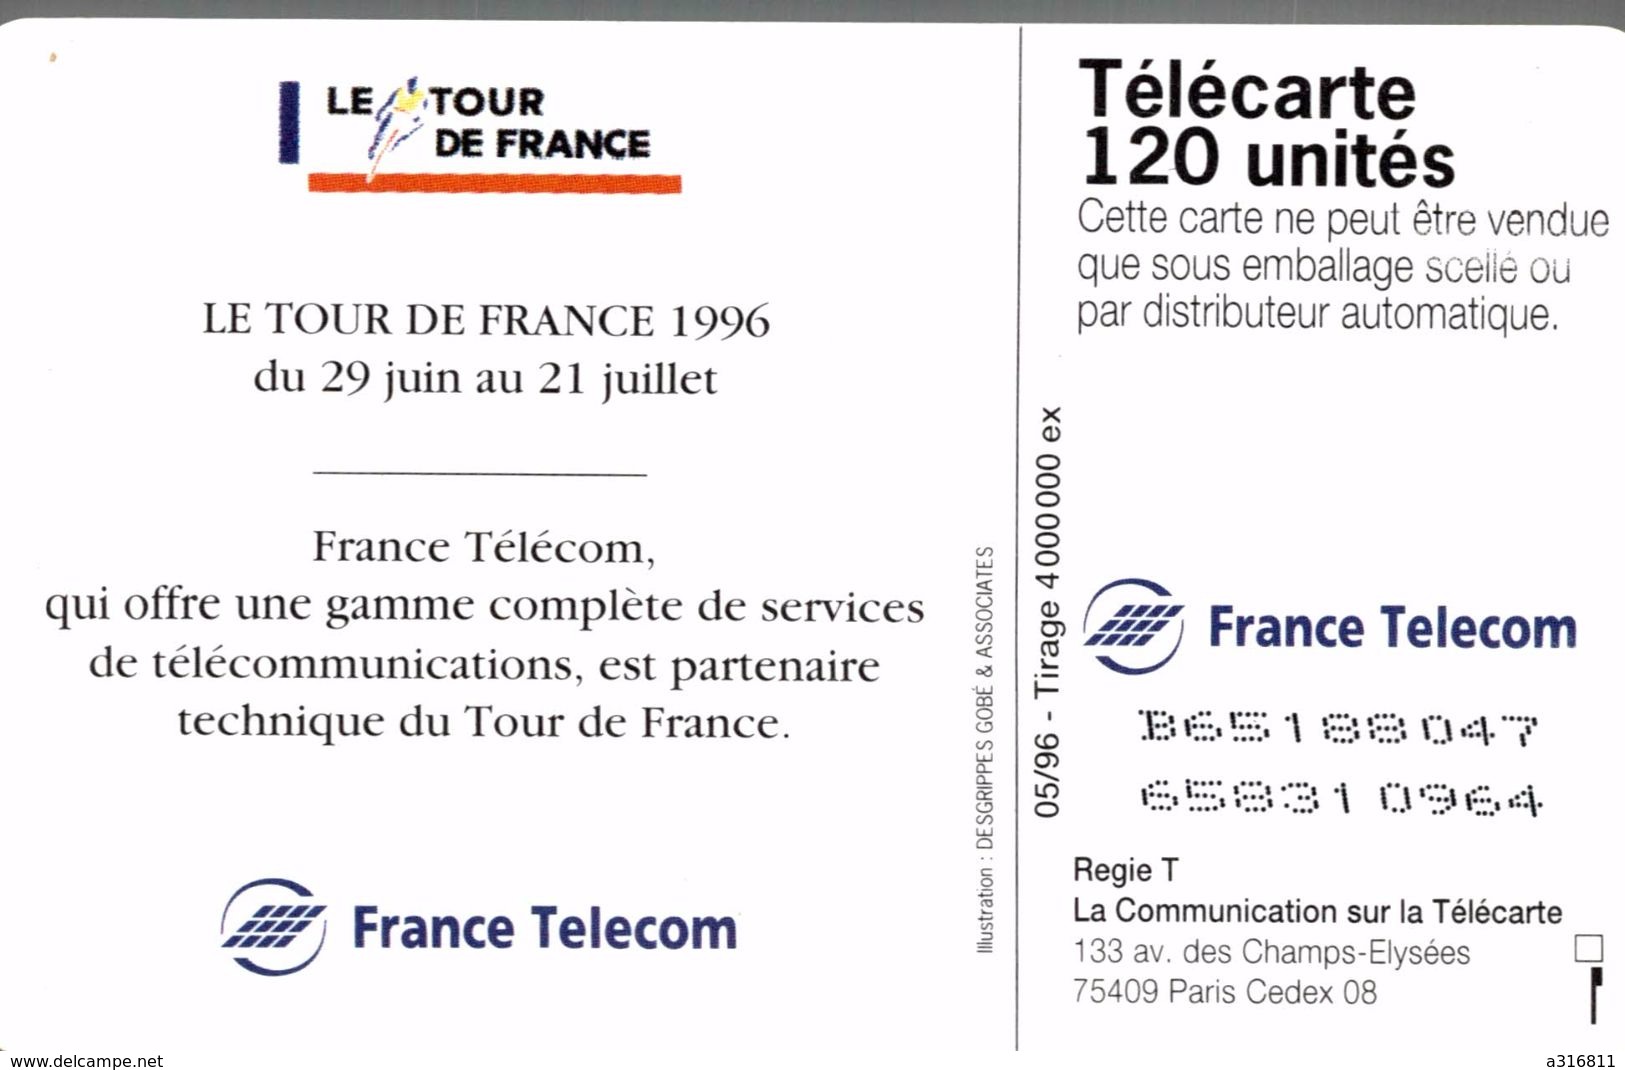 LE TOUR DE FRANCE 96 - 120 Eenheden